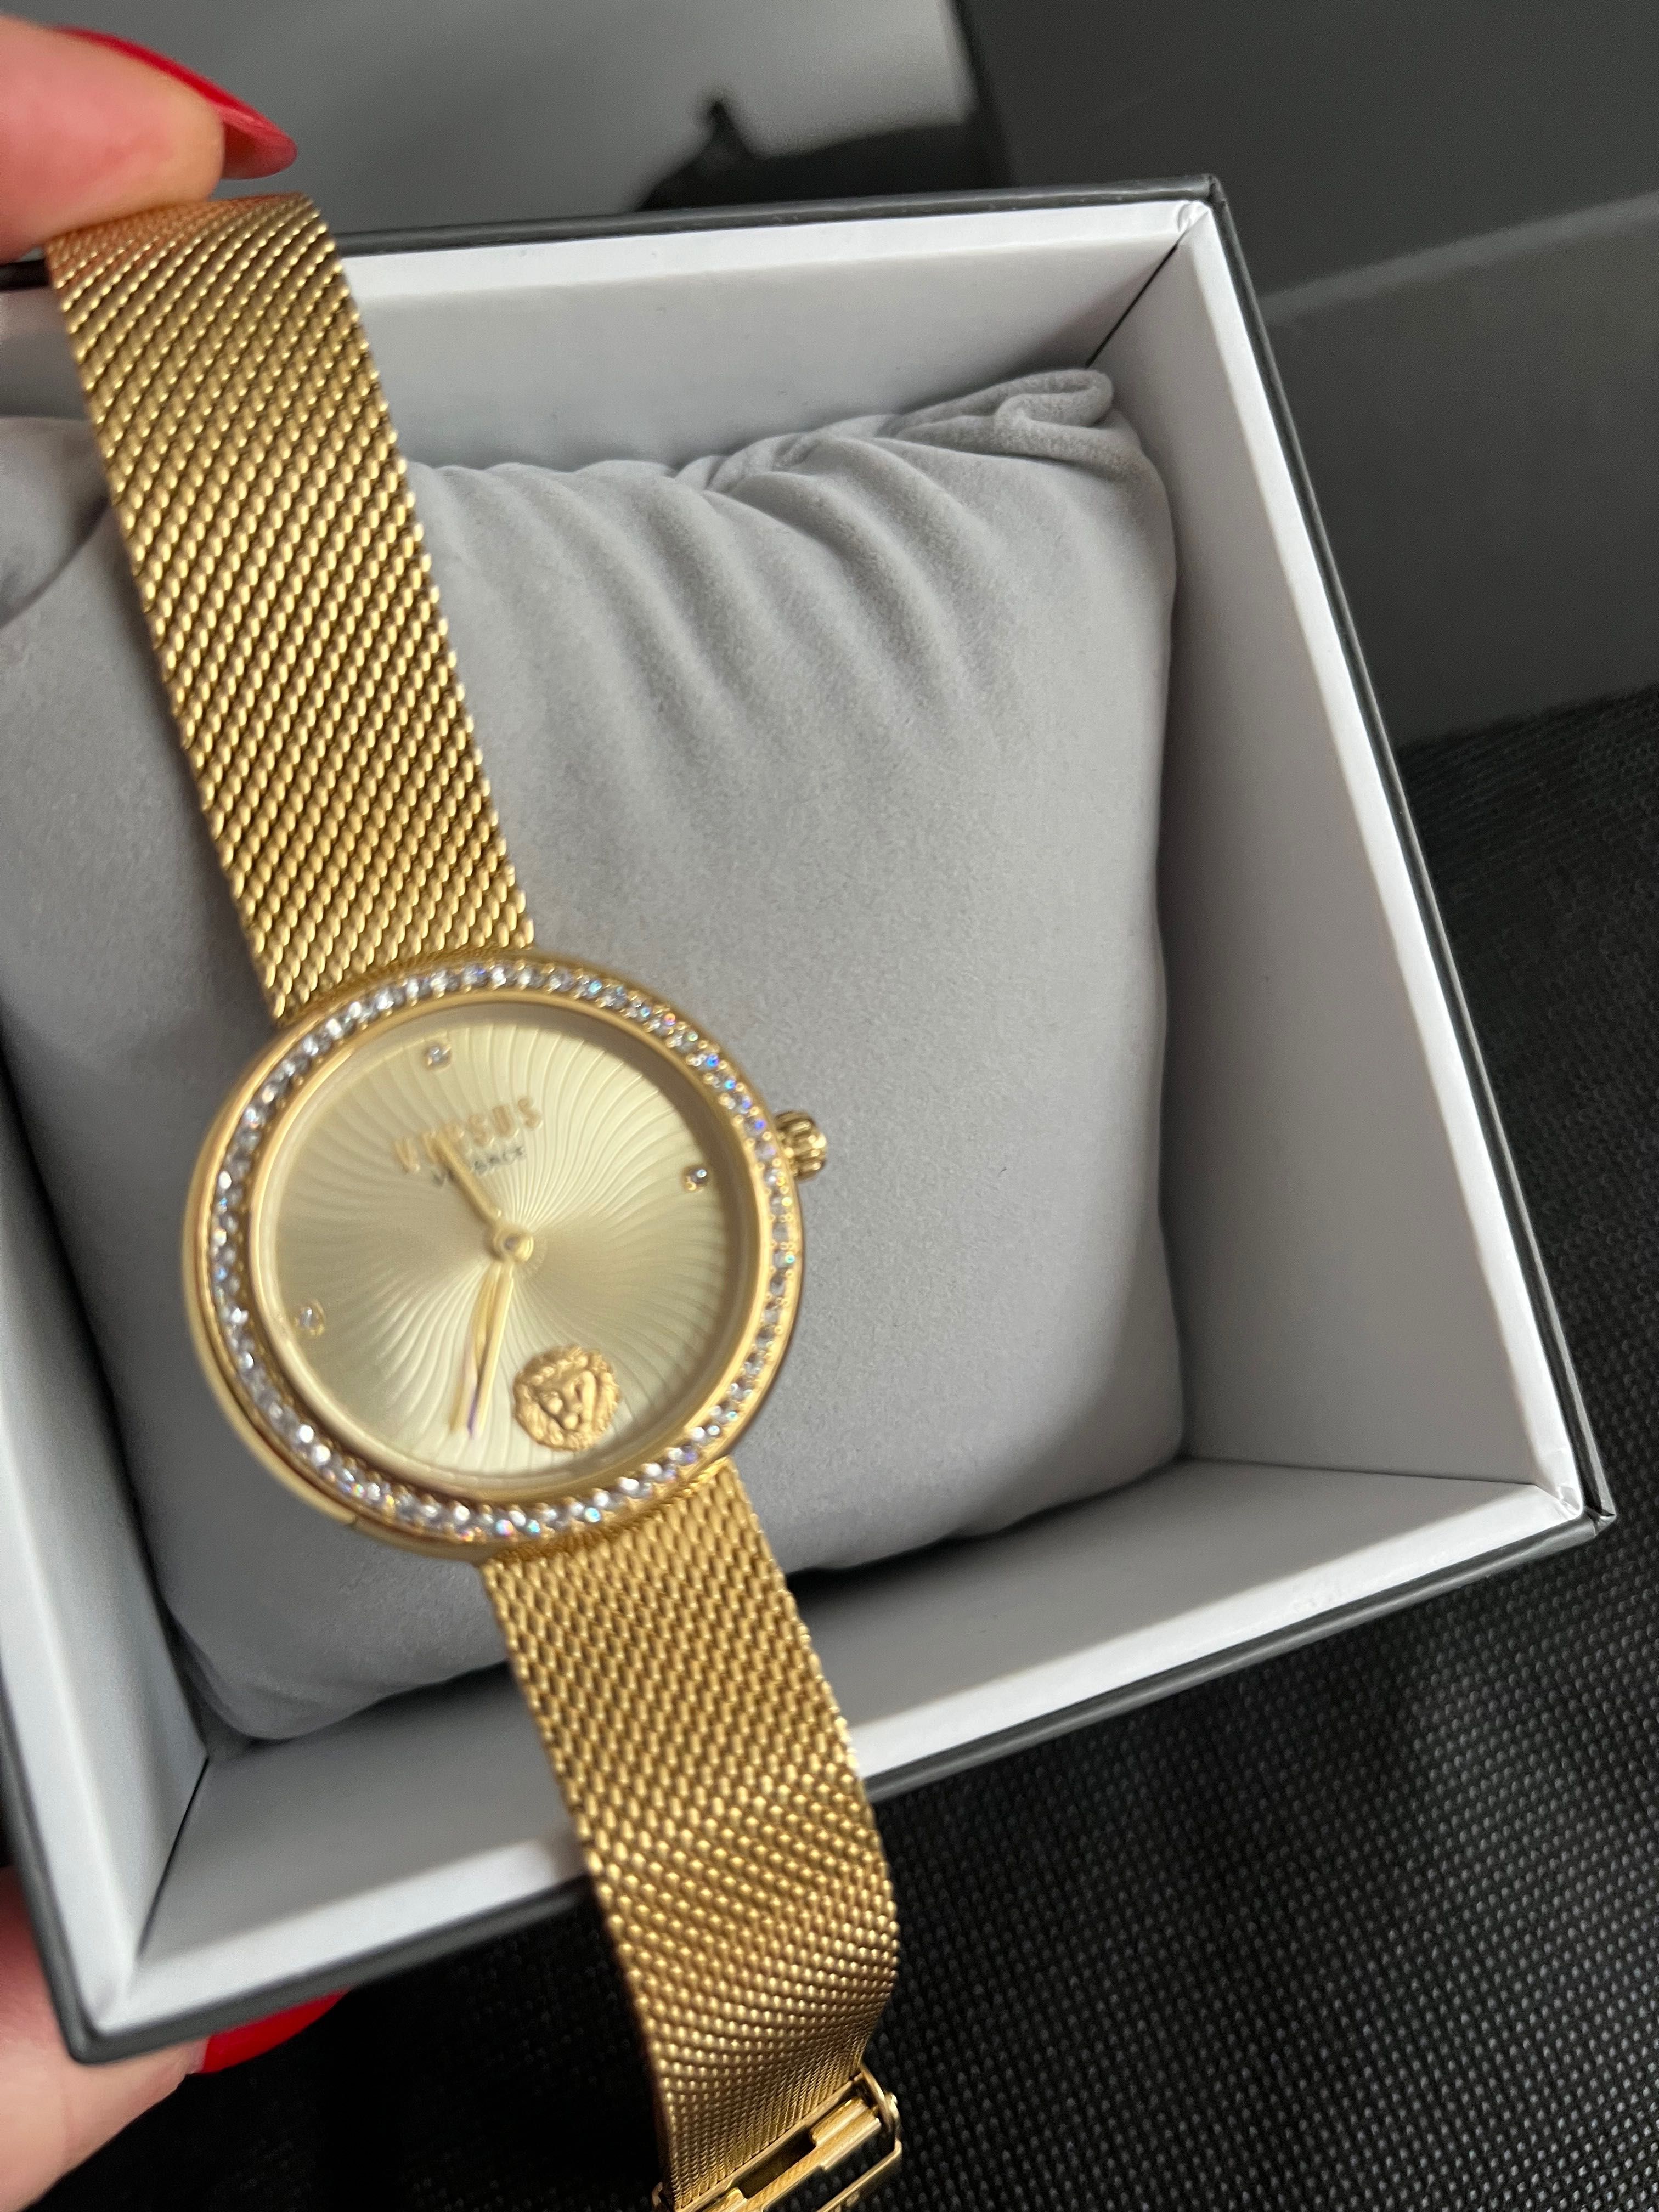 versus timex złoty nowy zegarek przepiękny damski w pudełeczku